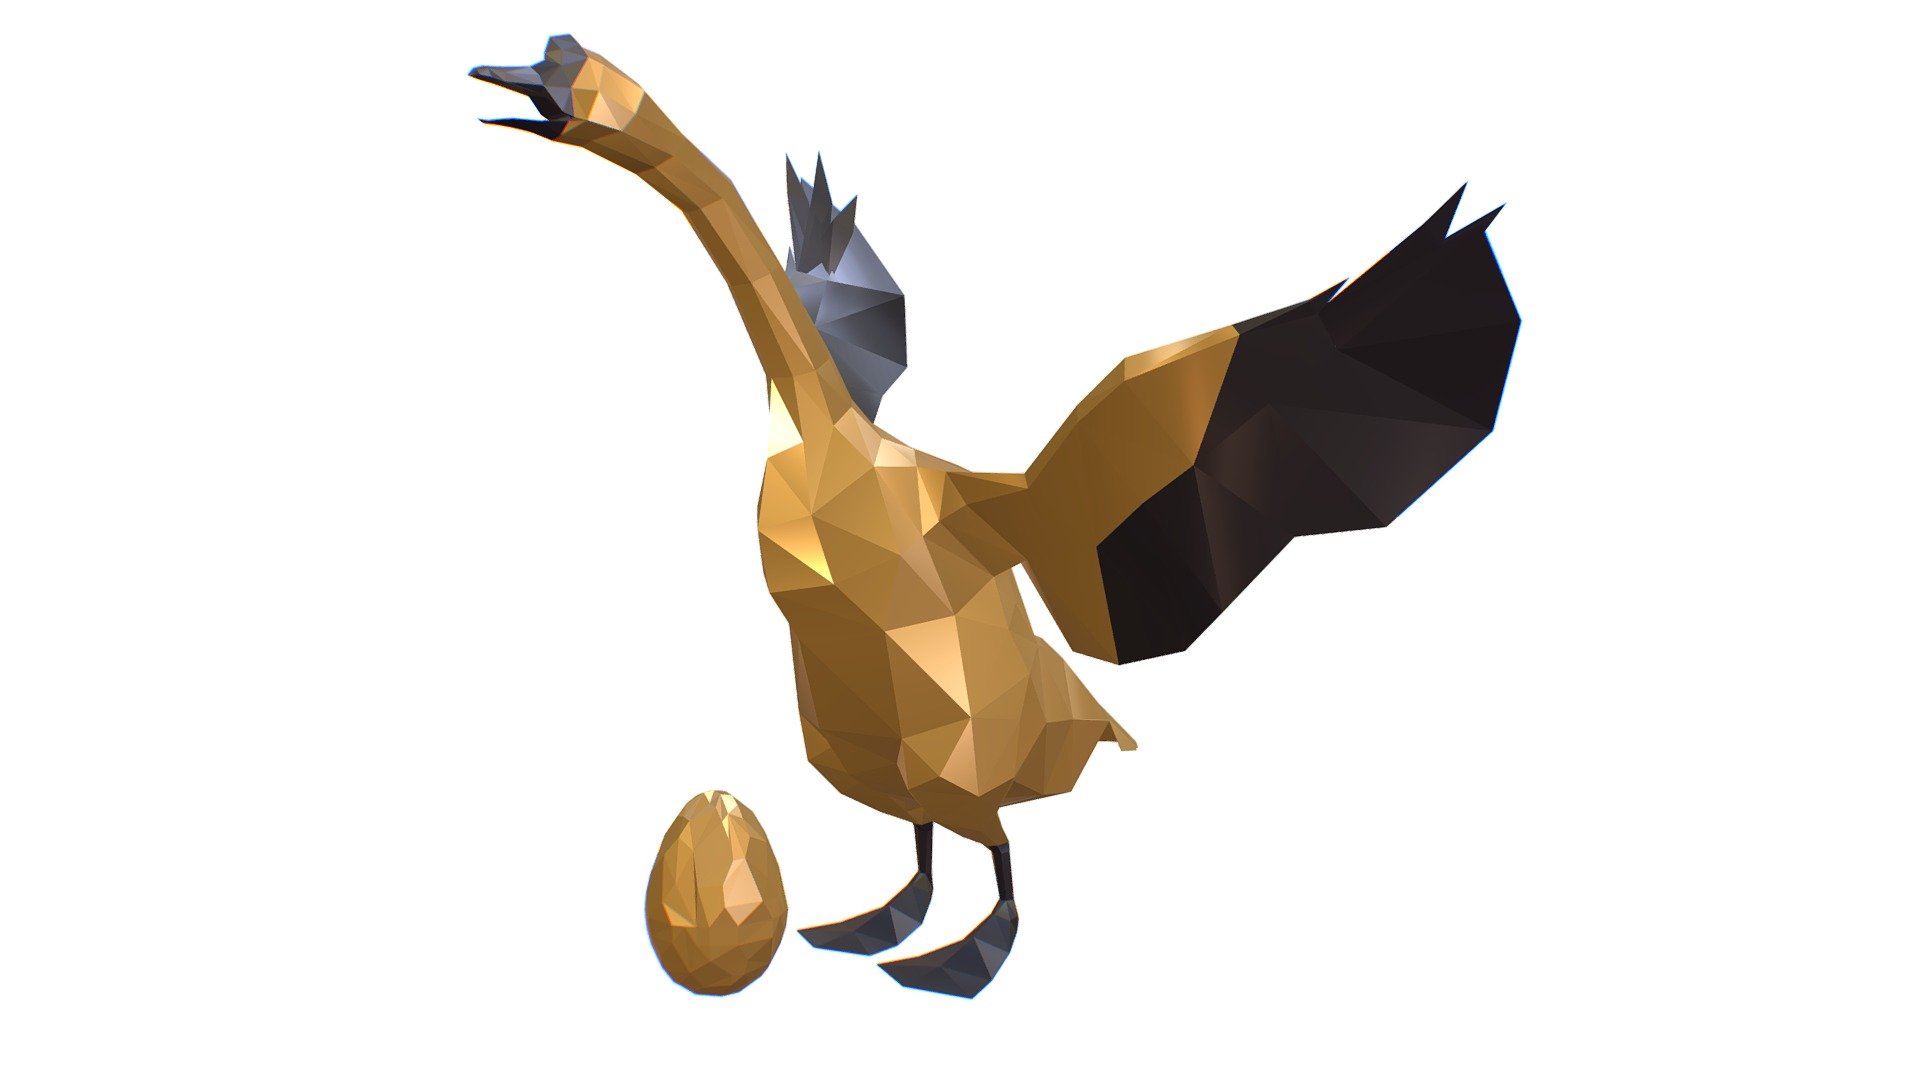 Animated Golden Goose Egg Black Wings Lowpoly Art Style - only materials - no textures - Animated Golden Goose Egg Lowpoly Art Style - Buy Royalty Free 3D model by Oleg Shuldiakov (@olegshuldiakov) 3d model